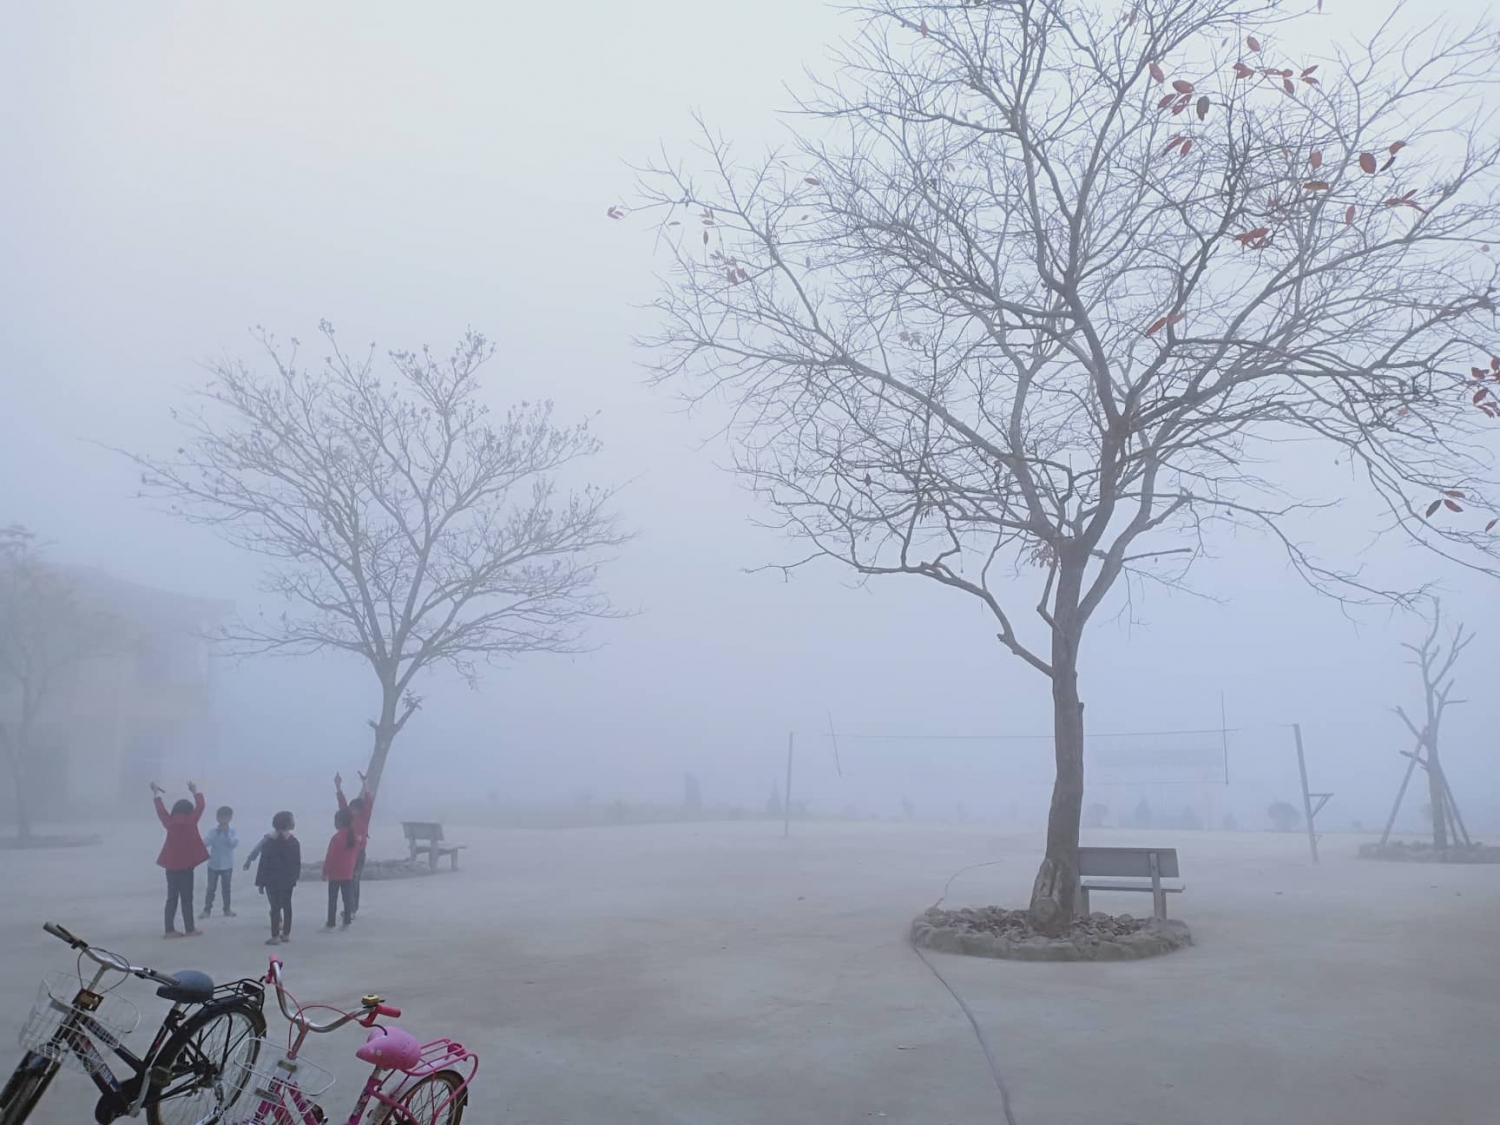  Sương mù bao trùm sân trường học vào buổi sáng.